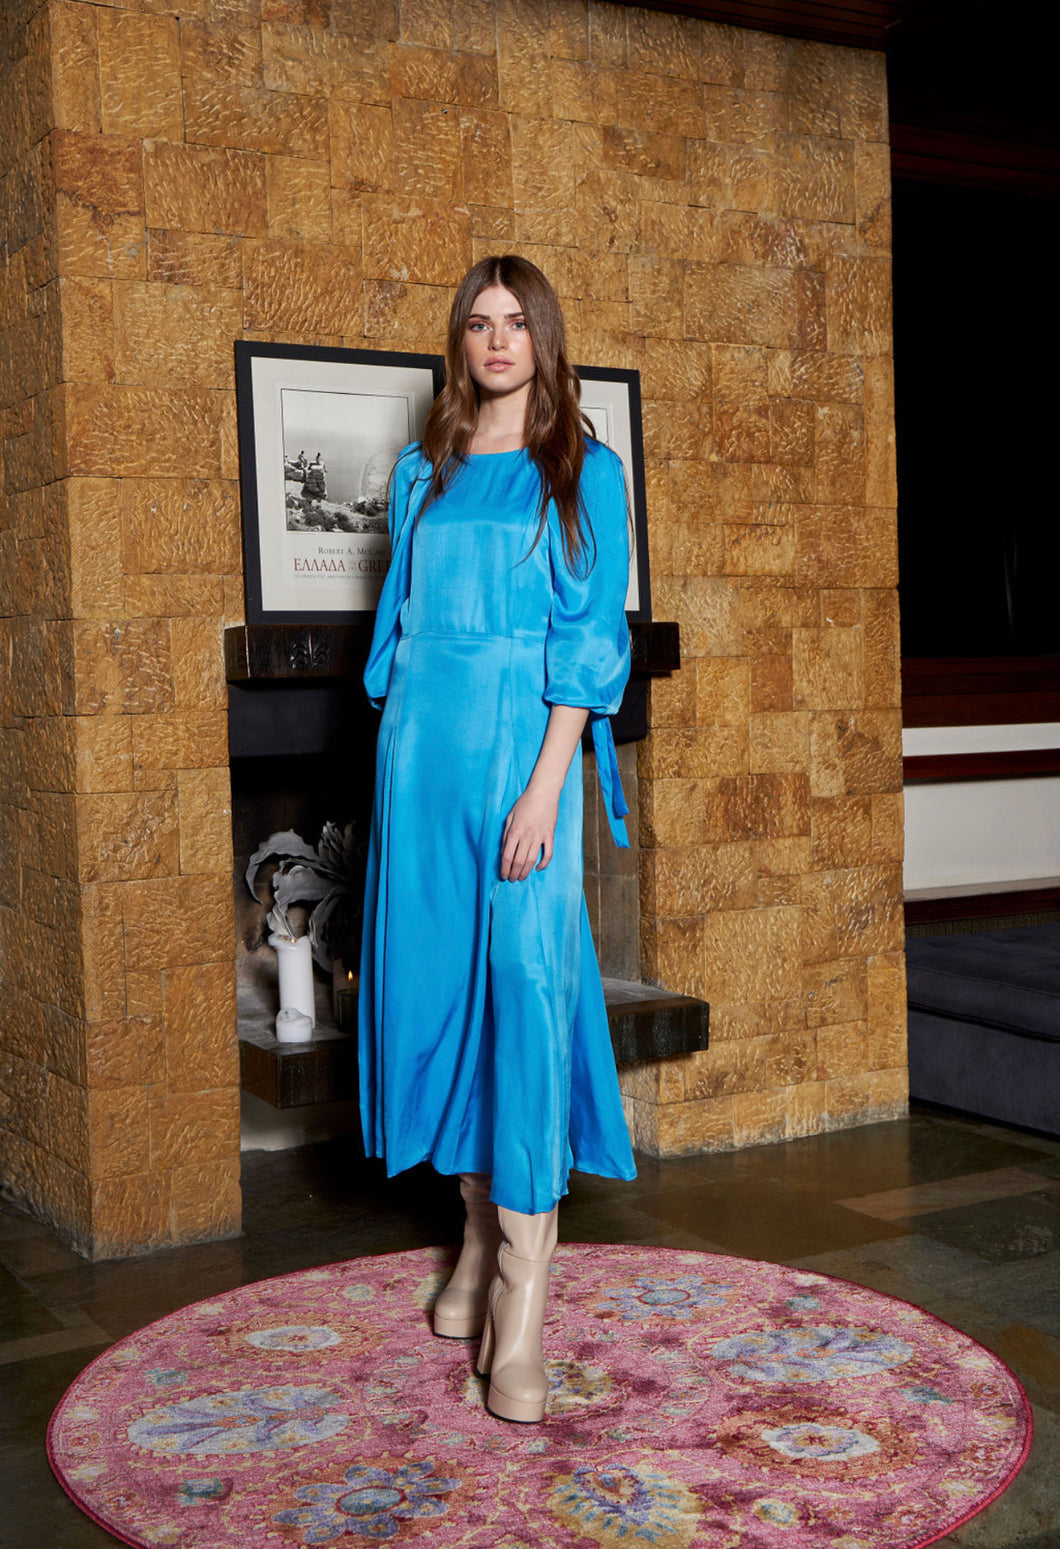 Cristina Blue Dress